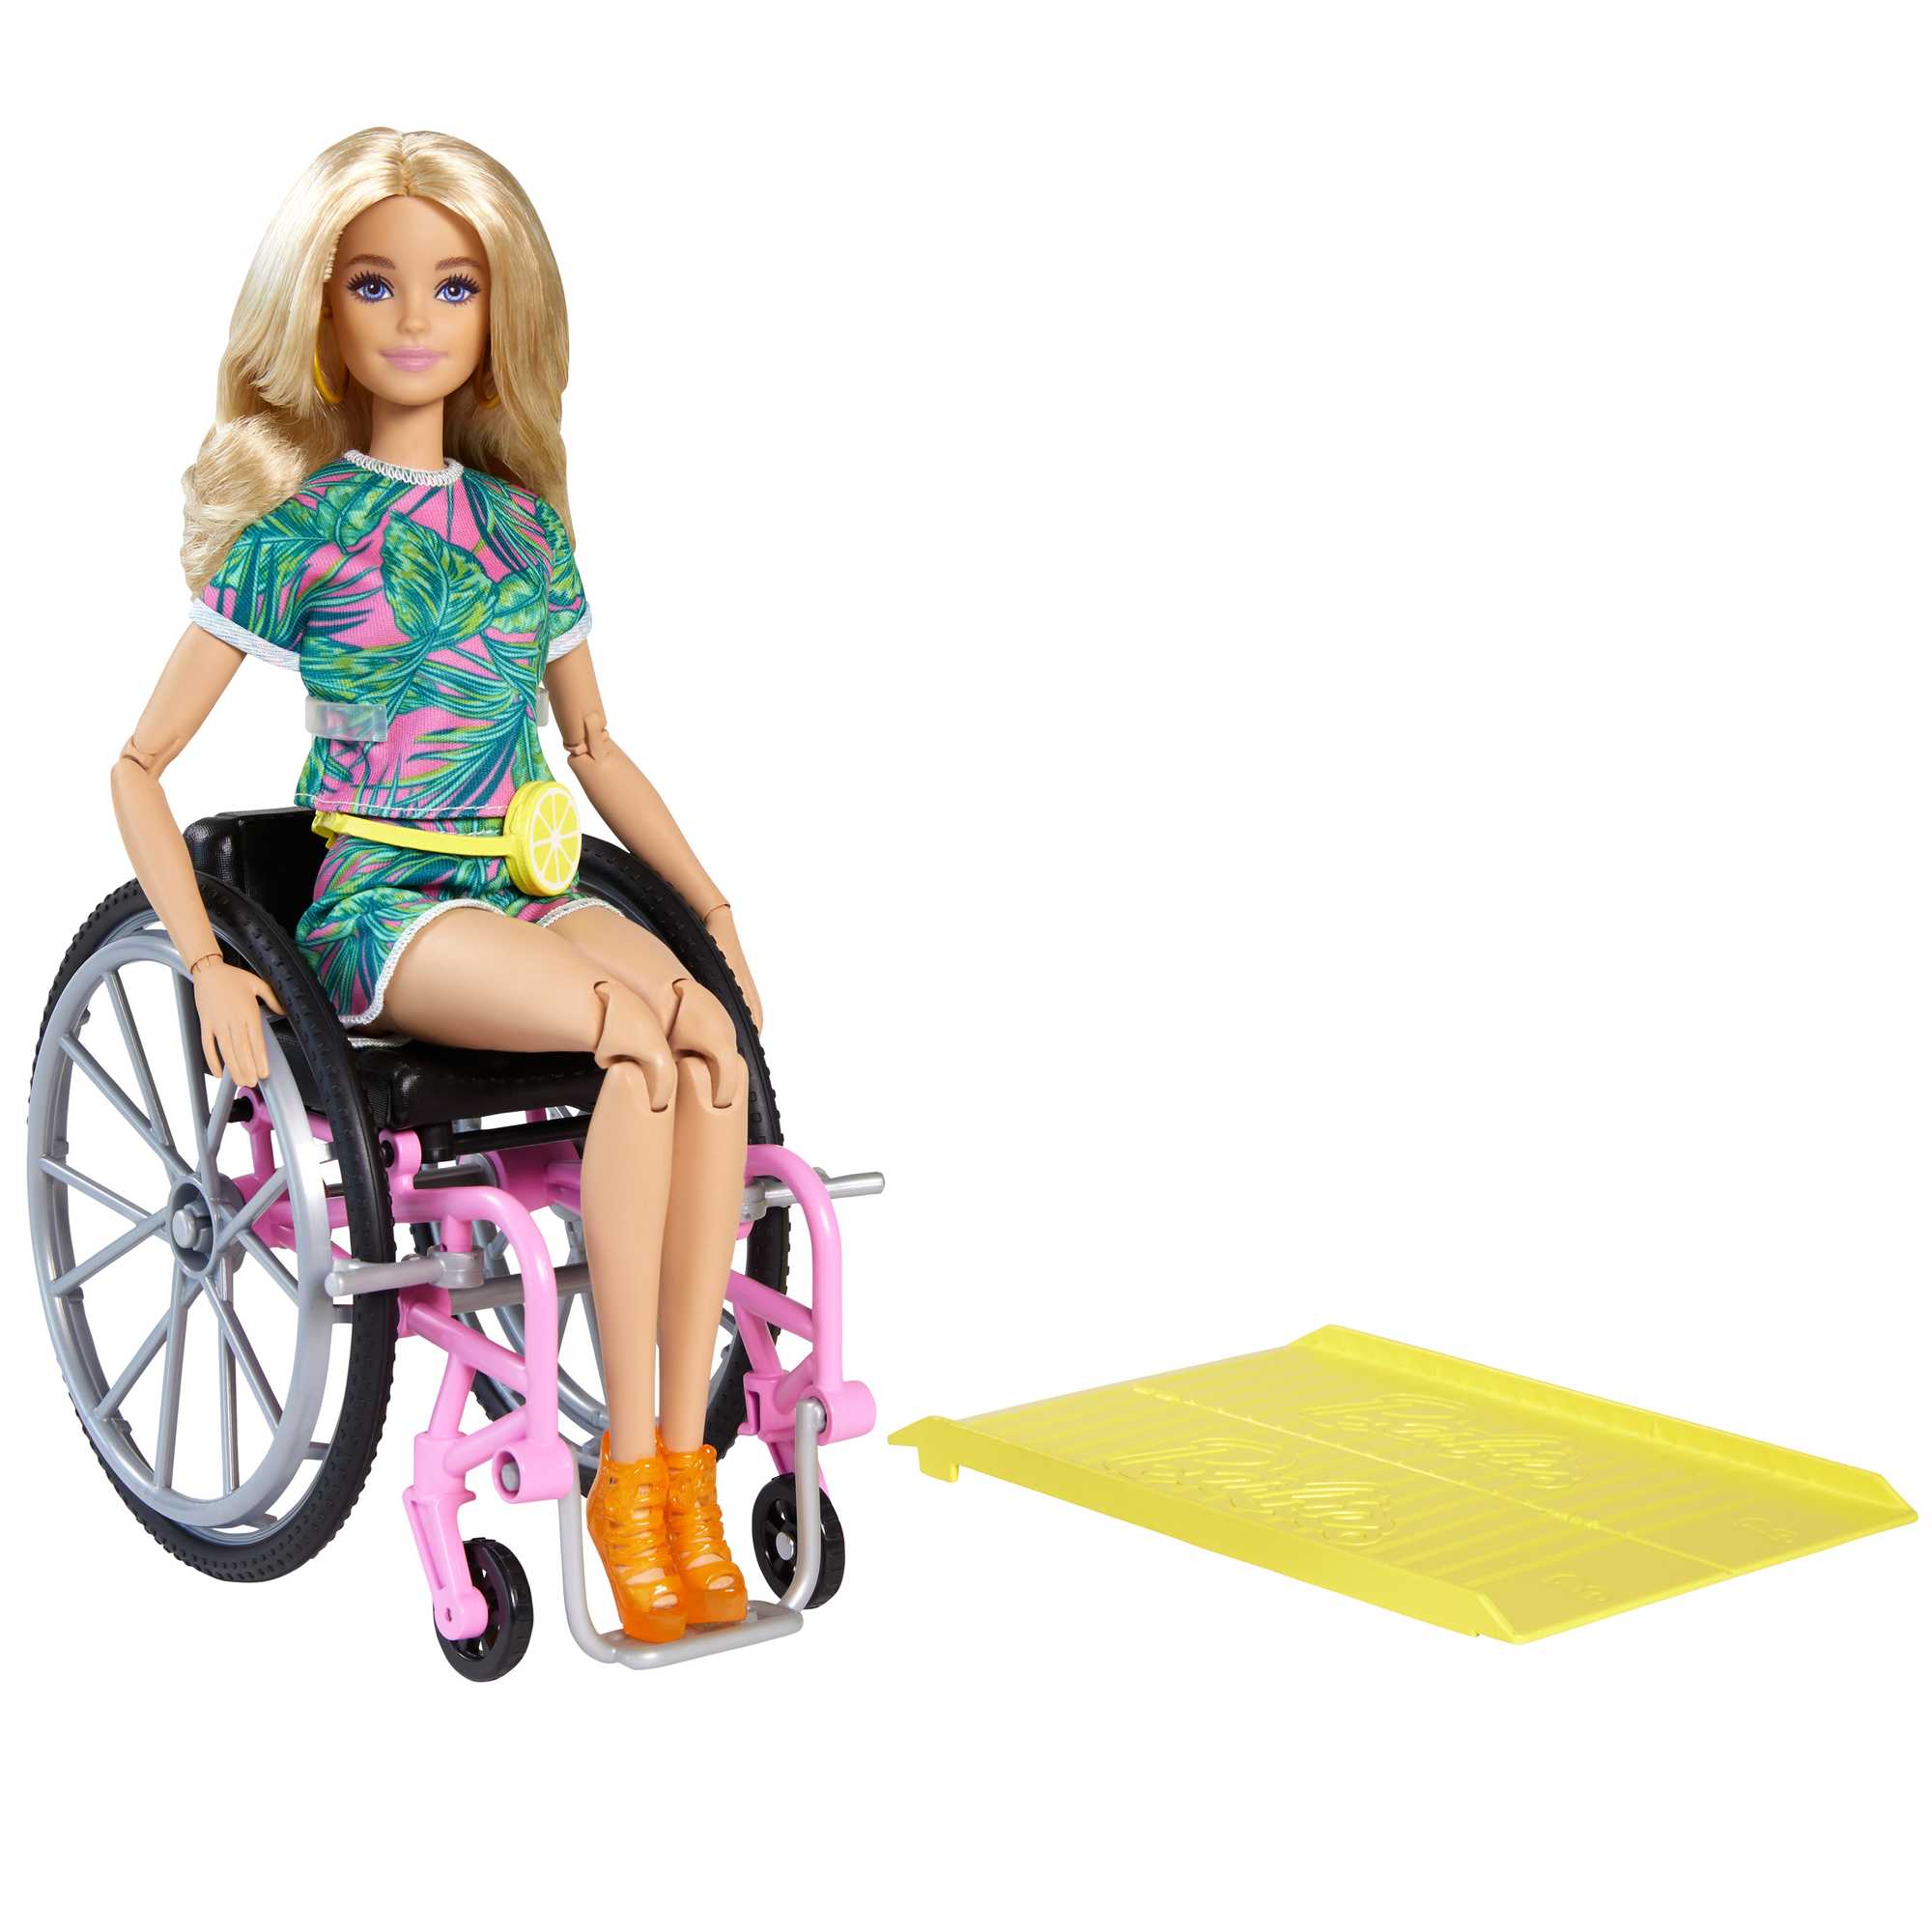 Chaise en metal barbie fauteuil enfant siege - Conforama